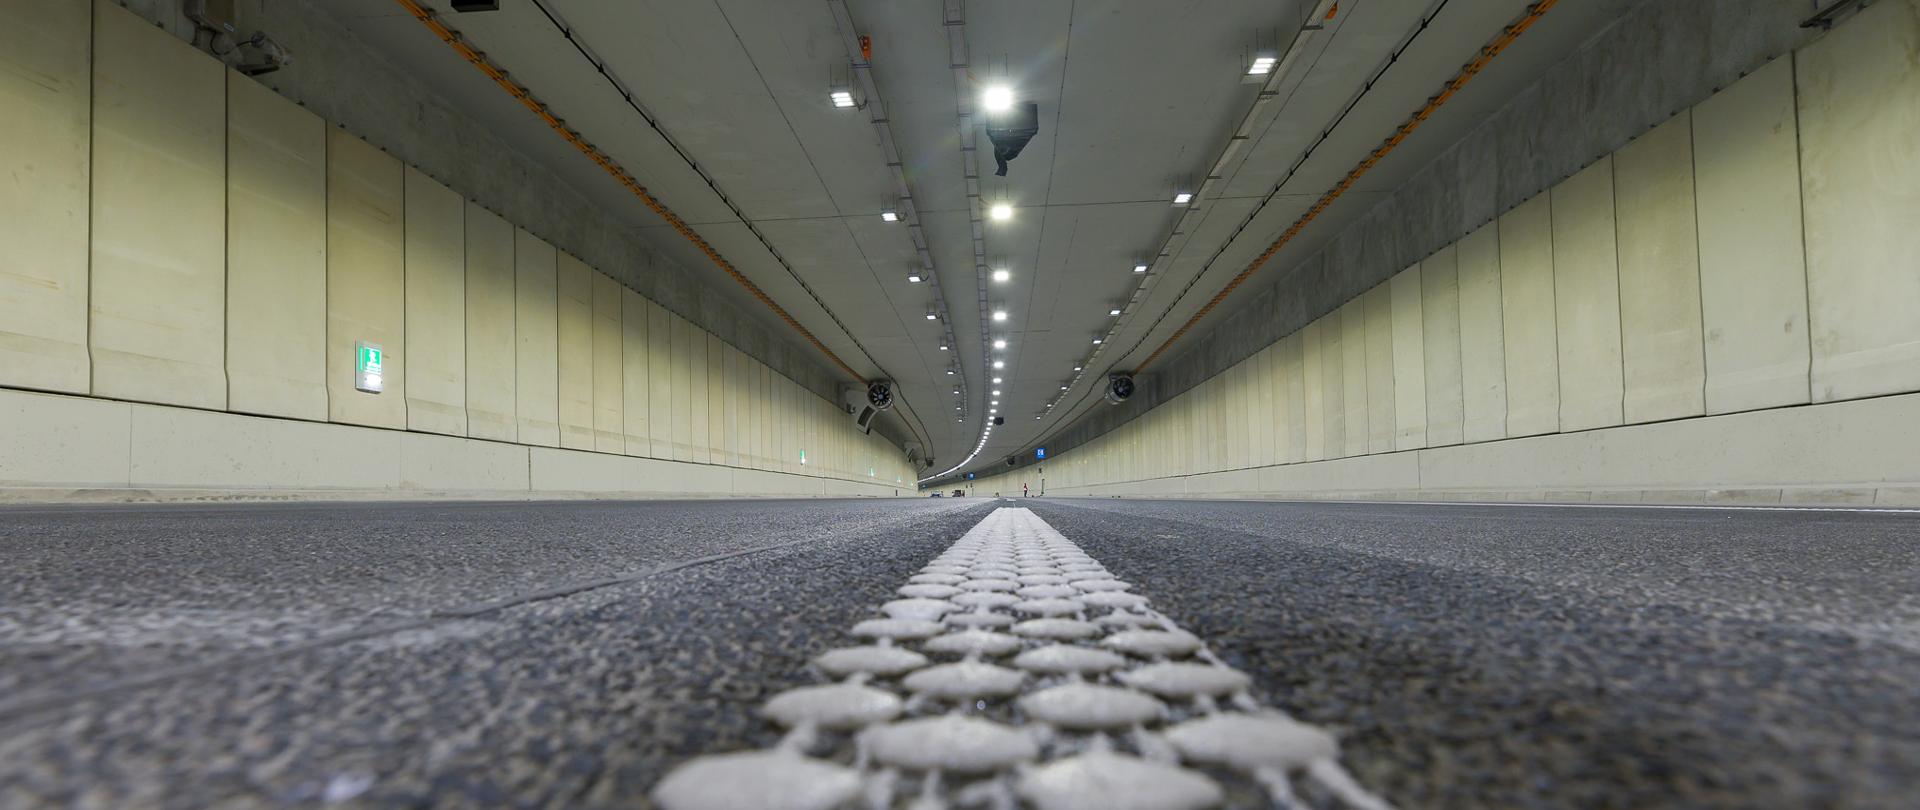 Ujęcie na wnętrze tunelu pod Ursynowem. Widoczne ściany tunelu z zamontowanymi urządzeniami technicznymi i oświetleniem.